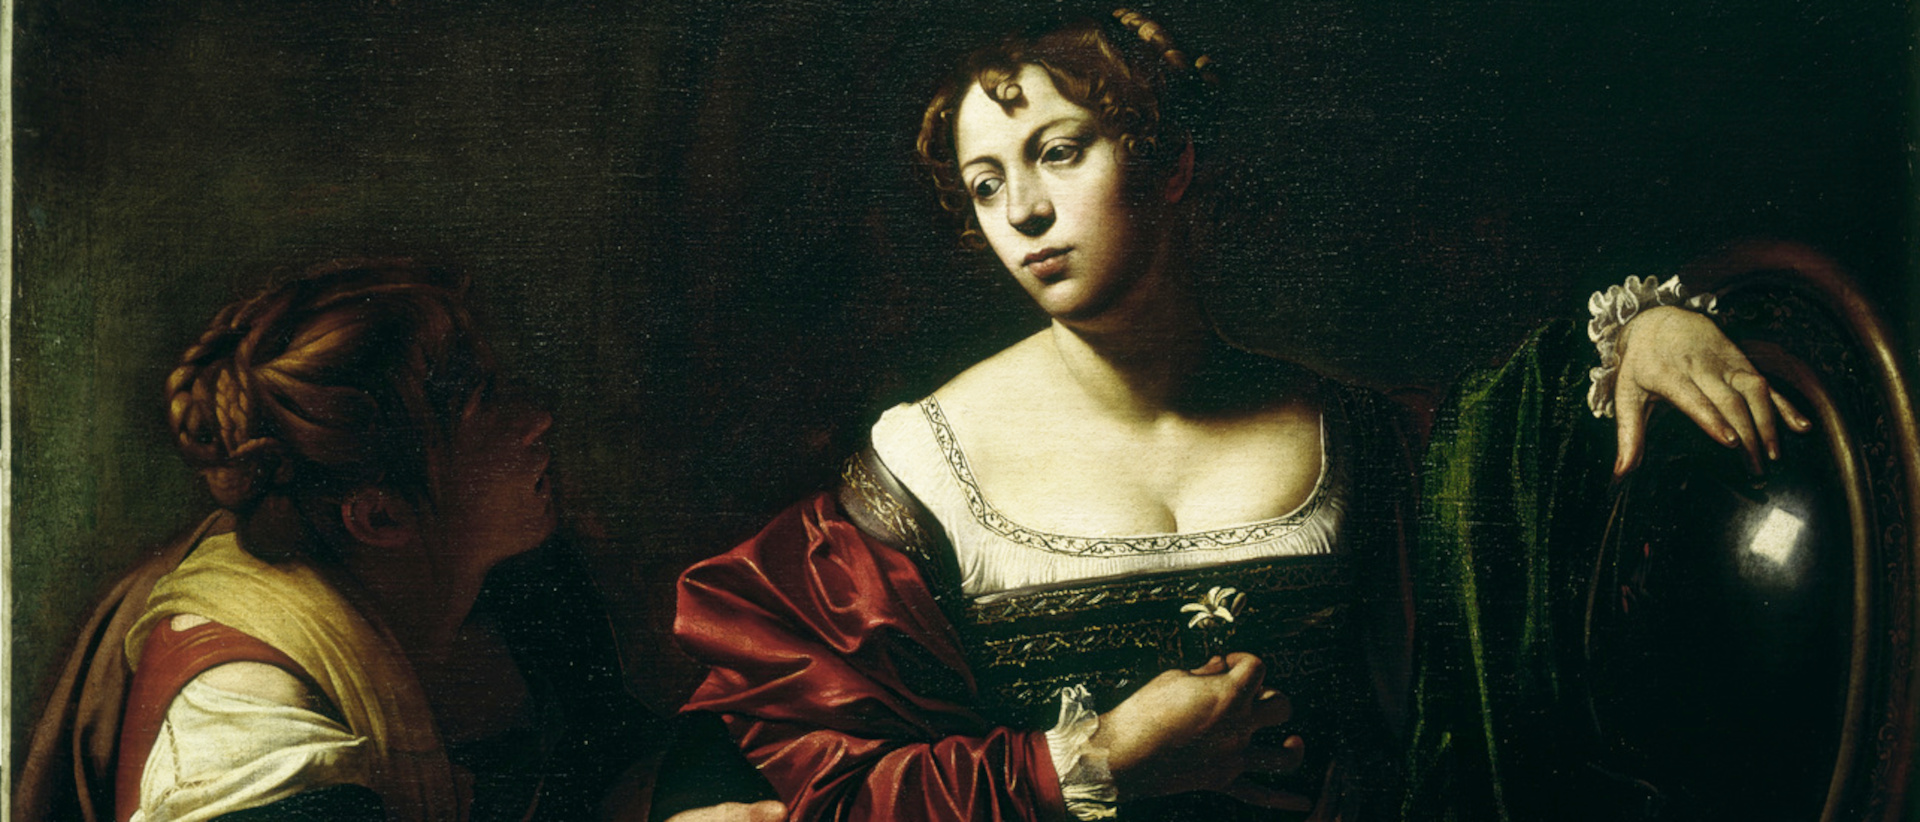 Martha und Maria Magdalena - zeitgenössische Kopie nach einem verlorenen Original Caravaggios um 1595/96.